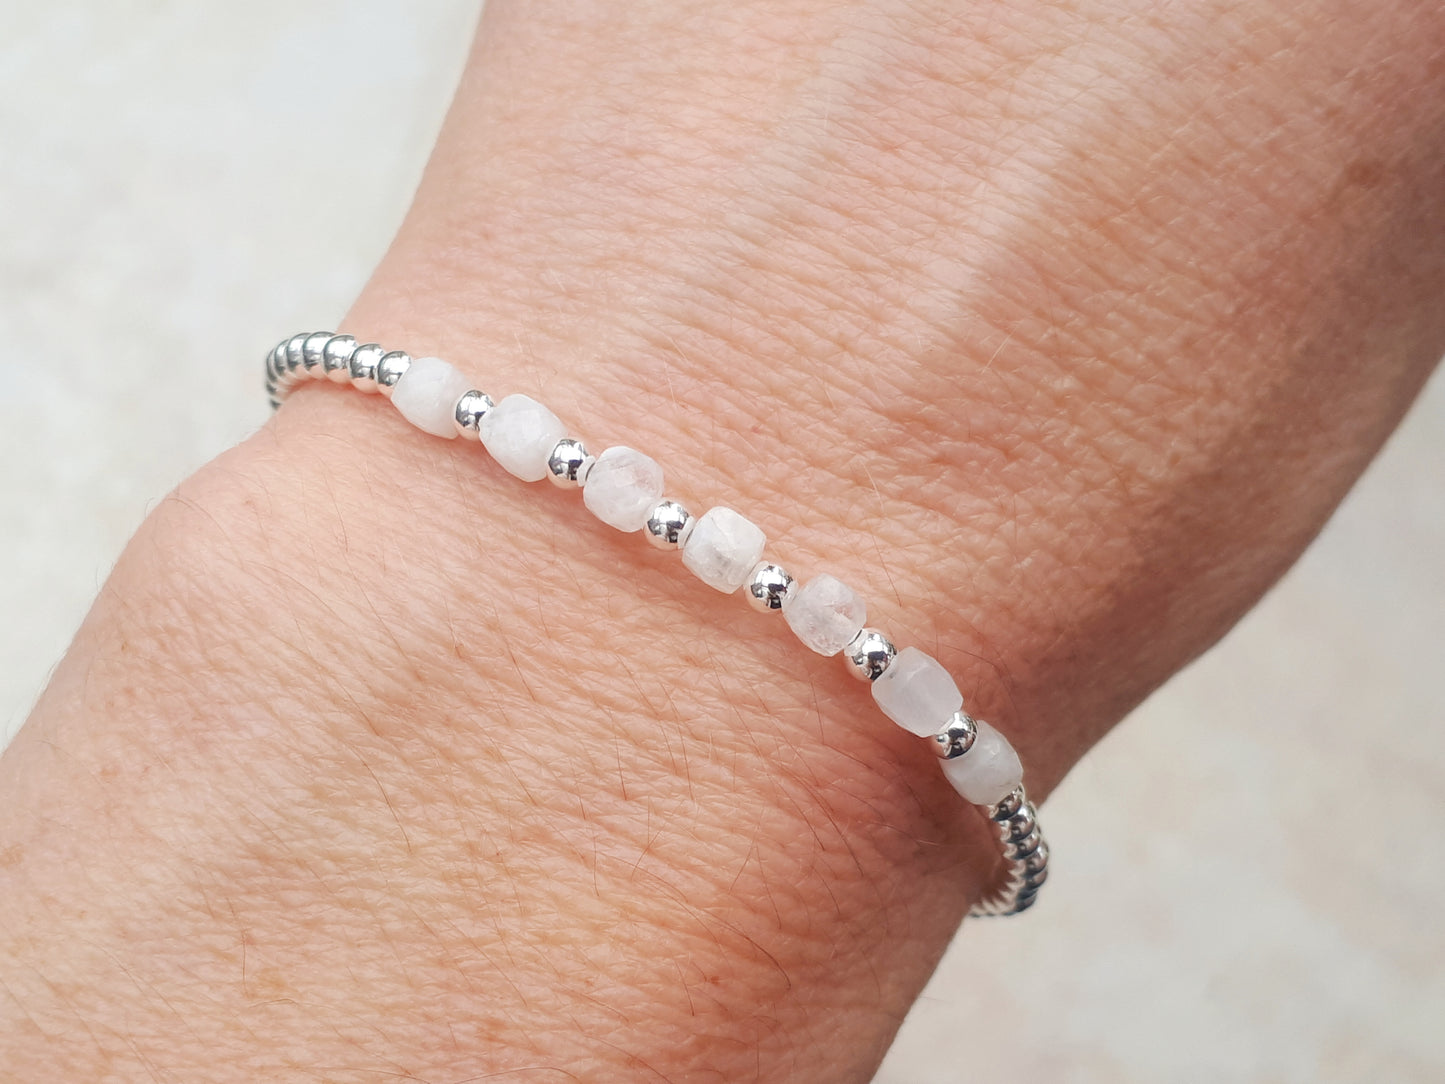 Moonstone milestone bracelet in sterling silver.